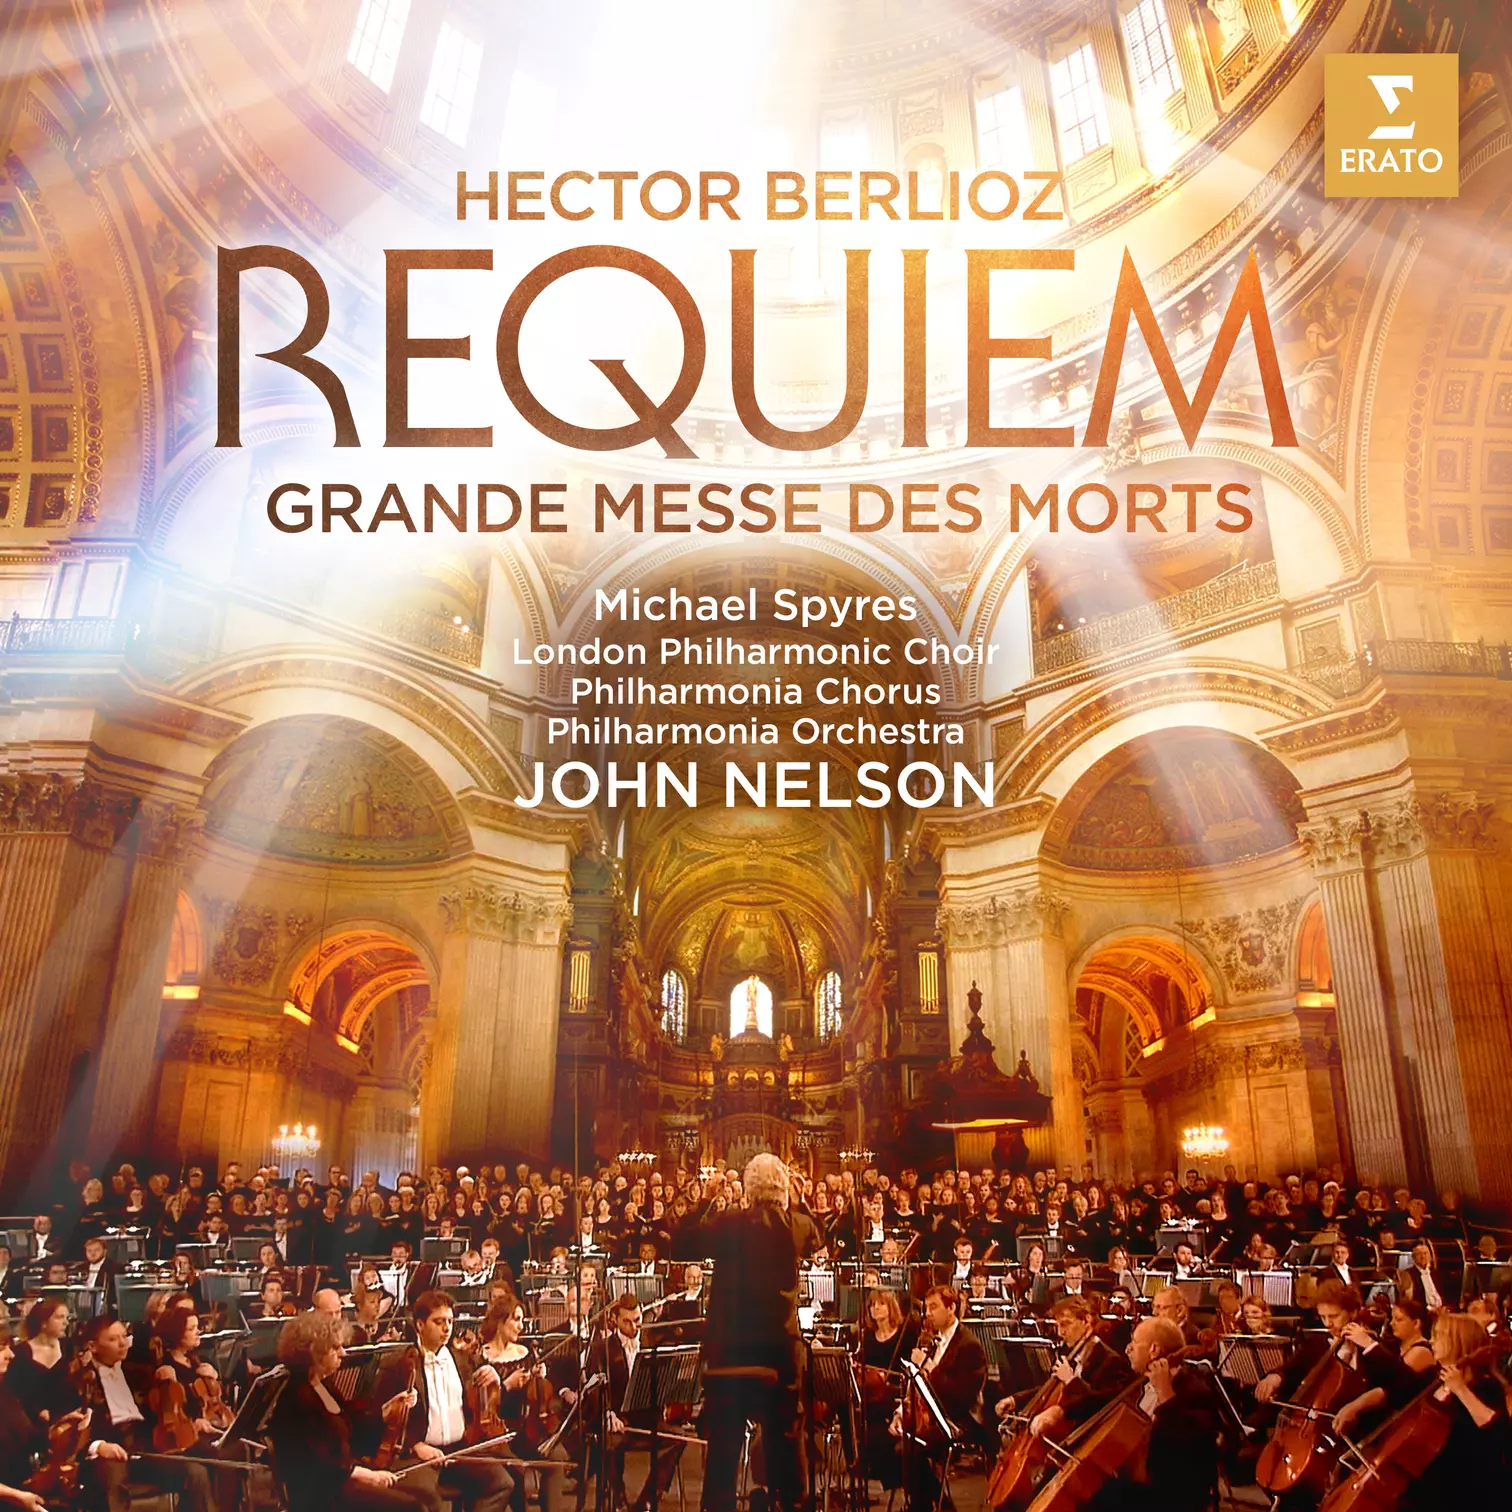 Requiem (Berlioz) – Wikipédia, a enciclopédia livre